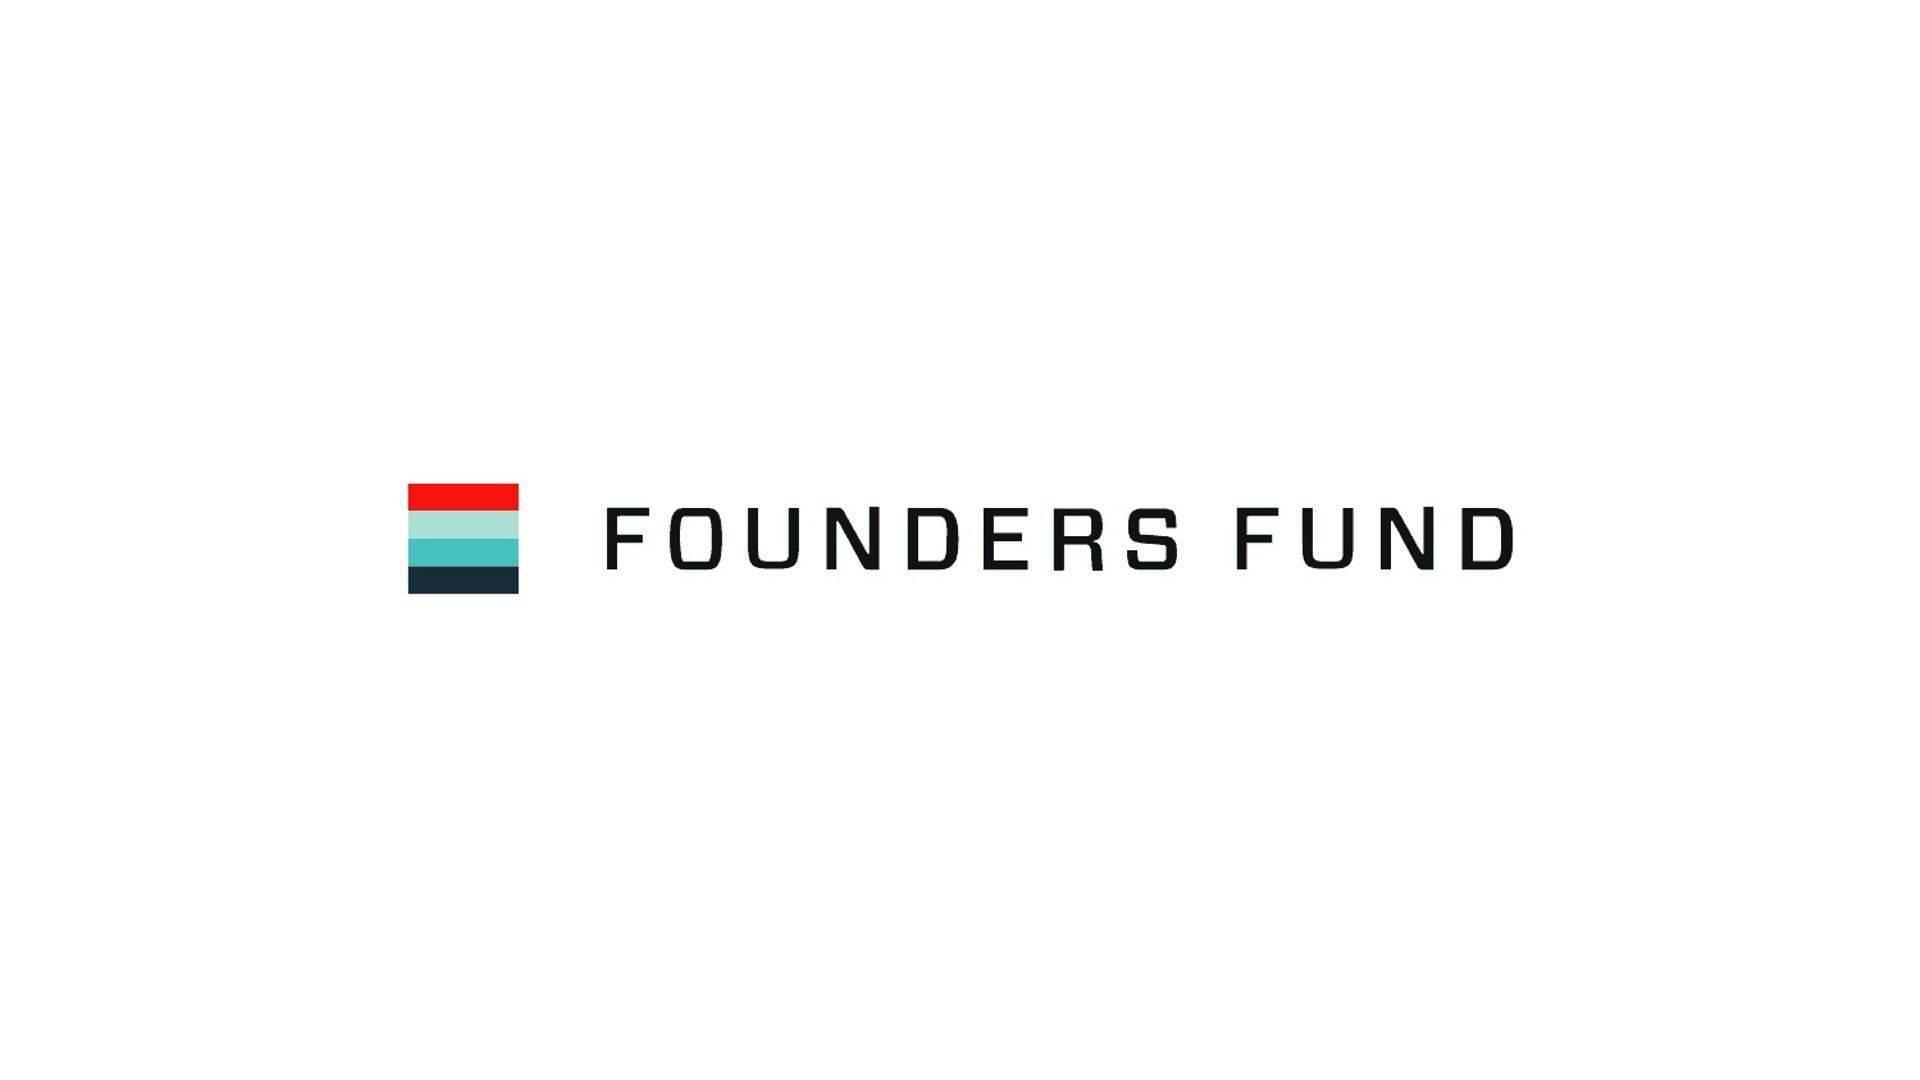 quy-founders-fund-dau-tu-200-trieu-usd-vao-bitcoin-va-ethereum